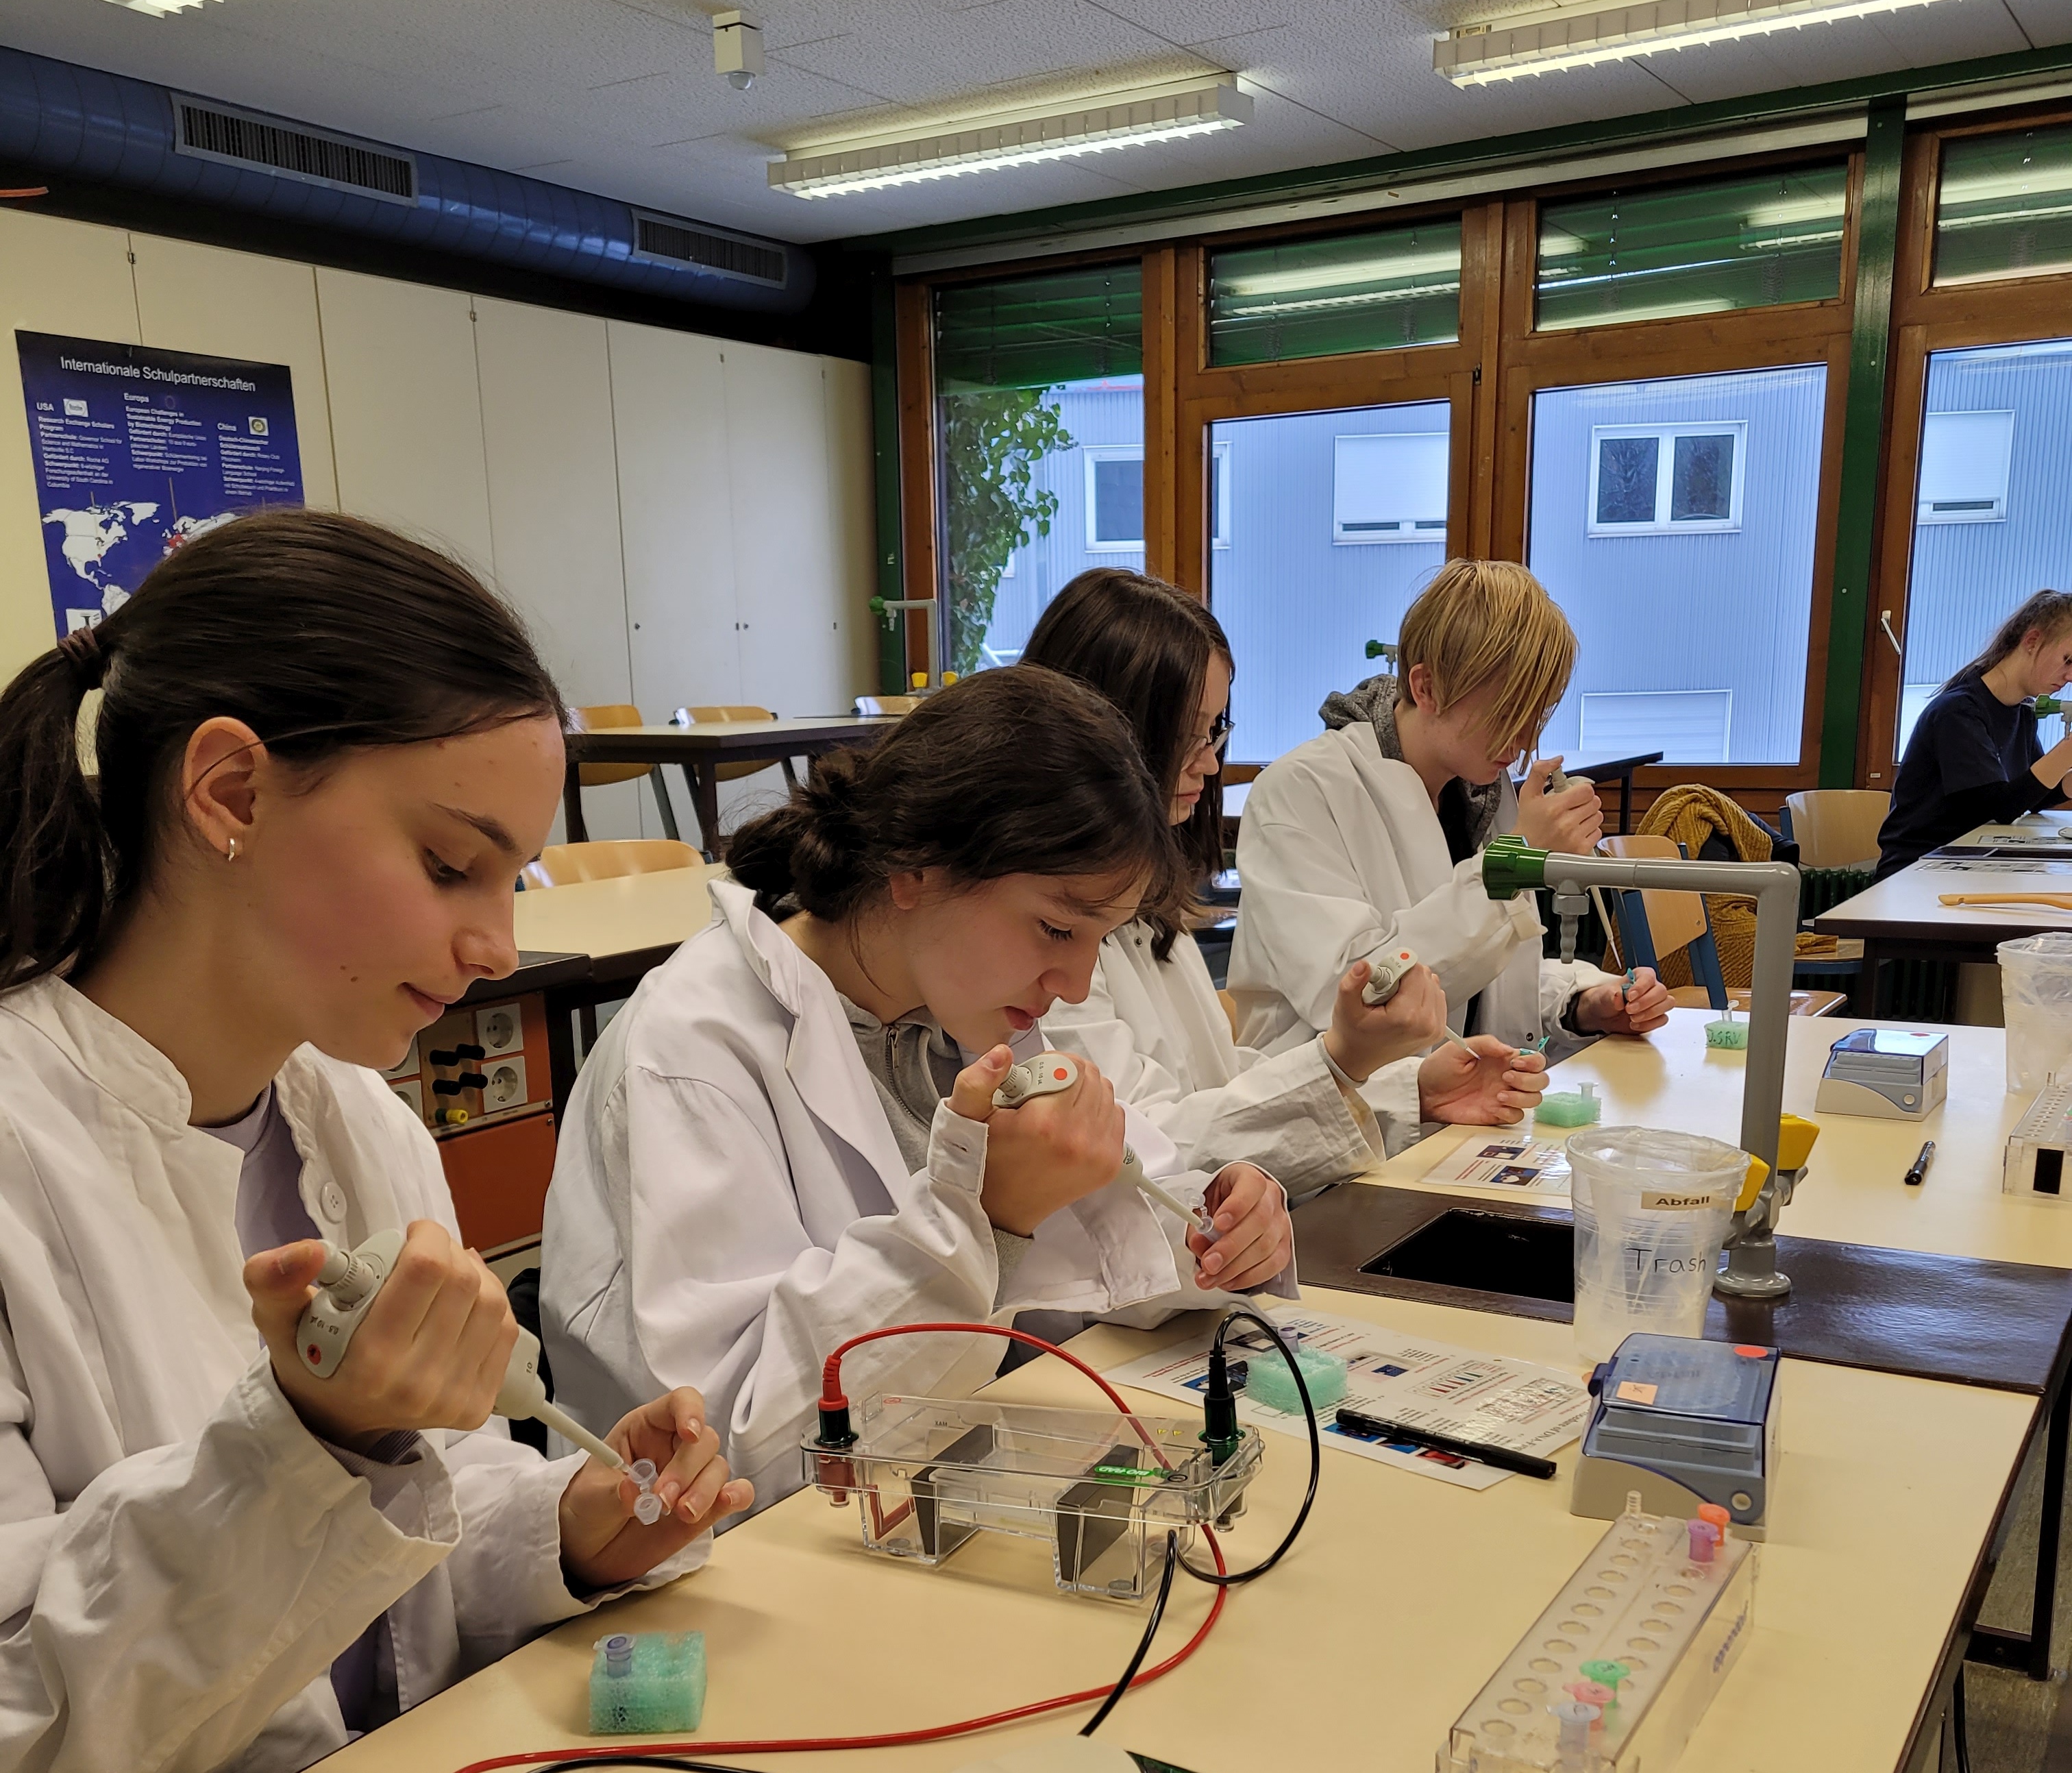 Biotechnologie - Experimentiernachmittag an der Johanna-Wittum-Schule